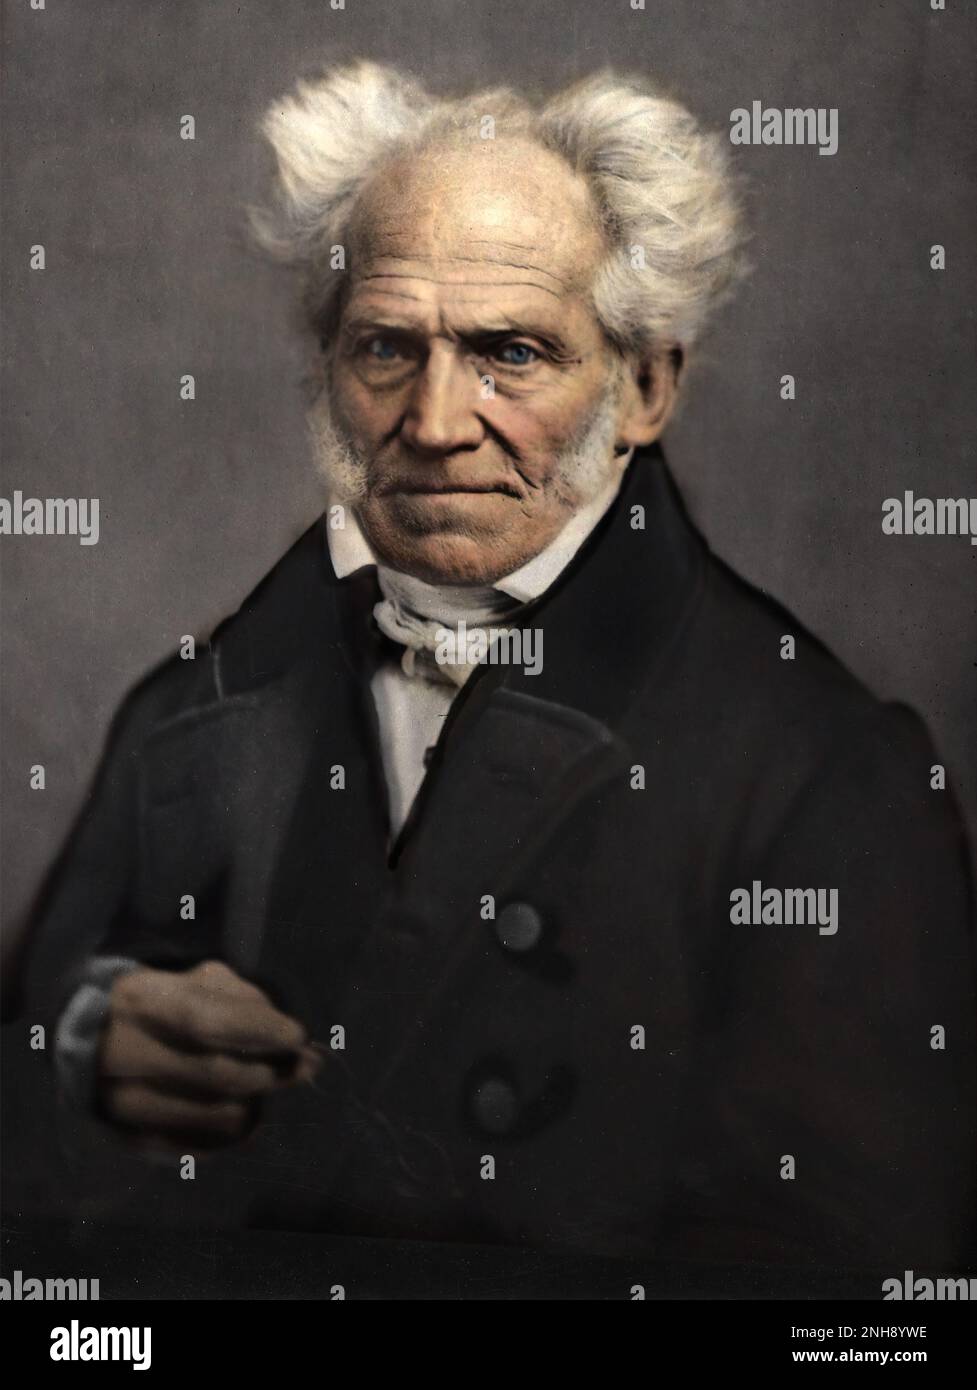 Arthur Schopenhauer (1788-1860), deutscher Philosoph, bekannt für seine Arbeit "die Welt als Wille und Repräsentation" aus dem Jahr 1818, die die phänomenale Welt als das Produkt eines blinden noumenalen Willens charakterisiert. Foto von Johann Sch√, 1859. Gefärbt. Stockfoto